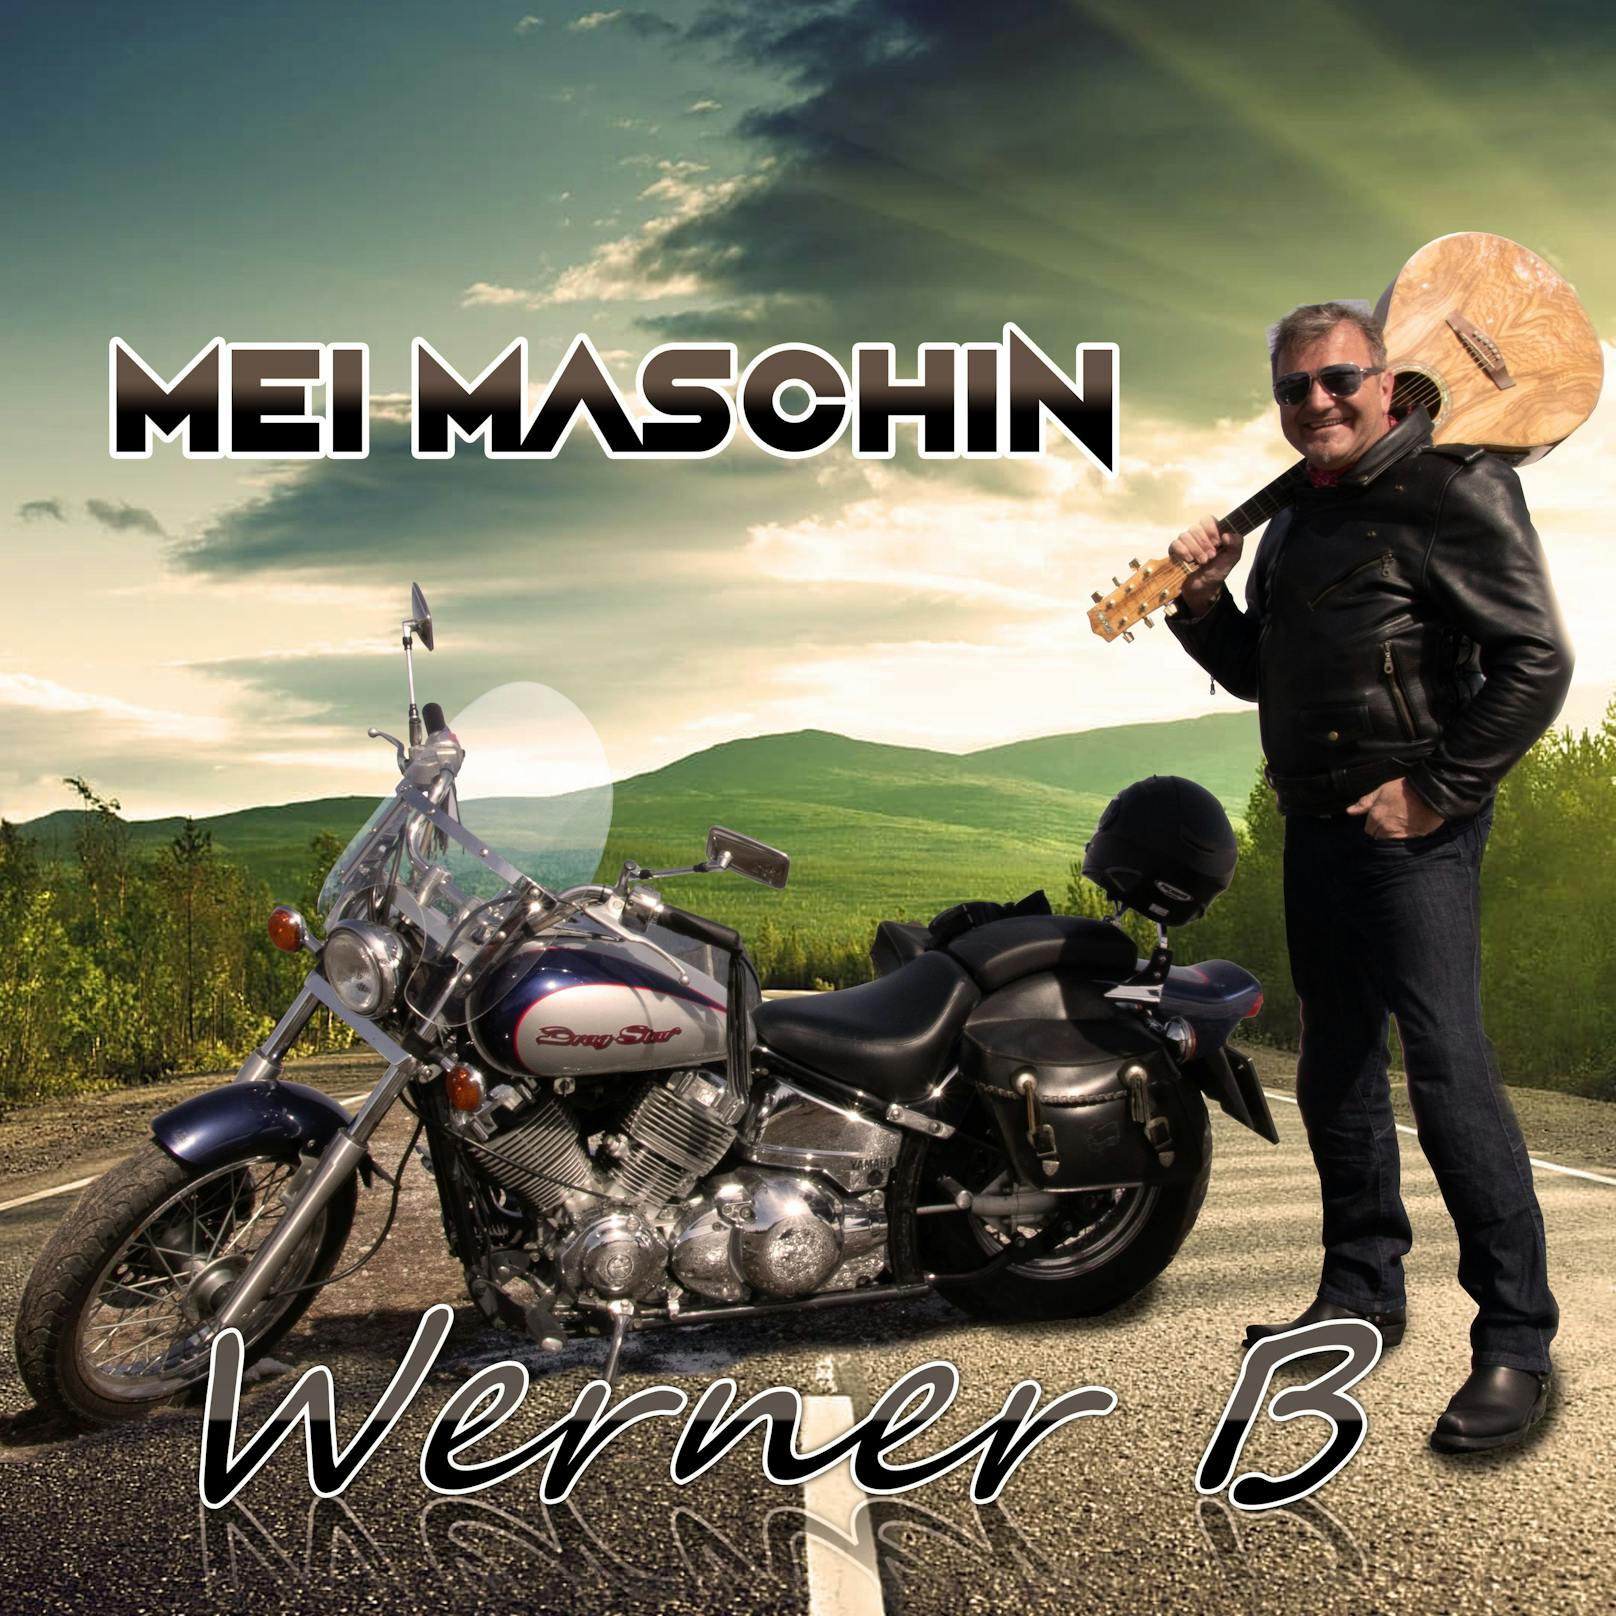 <strong>05.05.2021: Werner B. "Mei Maschin"</strong>:&nbsp;Egal ob nach Kärnten um die Seen, nach Lienz auf einen Kaffee oder einfach nach Tirol – Werner fühlt sich auf seiner "Lady" überall wohl. Und das hört man in jedem Ton seiner Biker-Hymne, <a href="https://www.youtube.com/watch?v=hC3Lt_CHfIo">hier geht's zum Video &gt;&gt;</a>